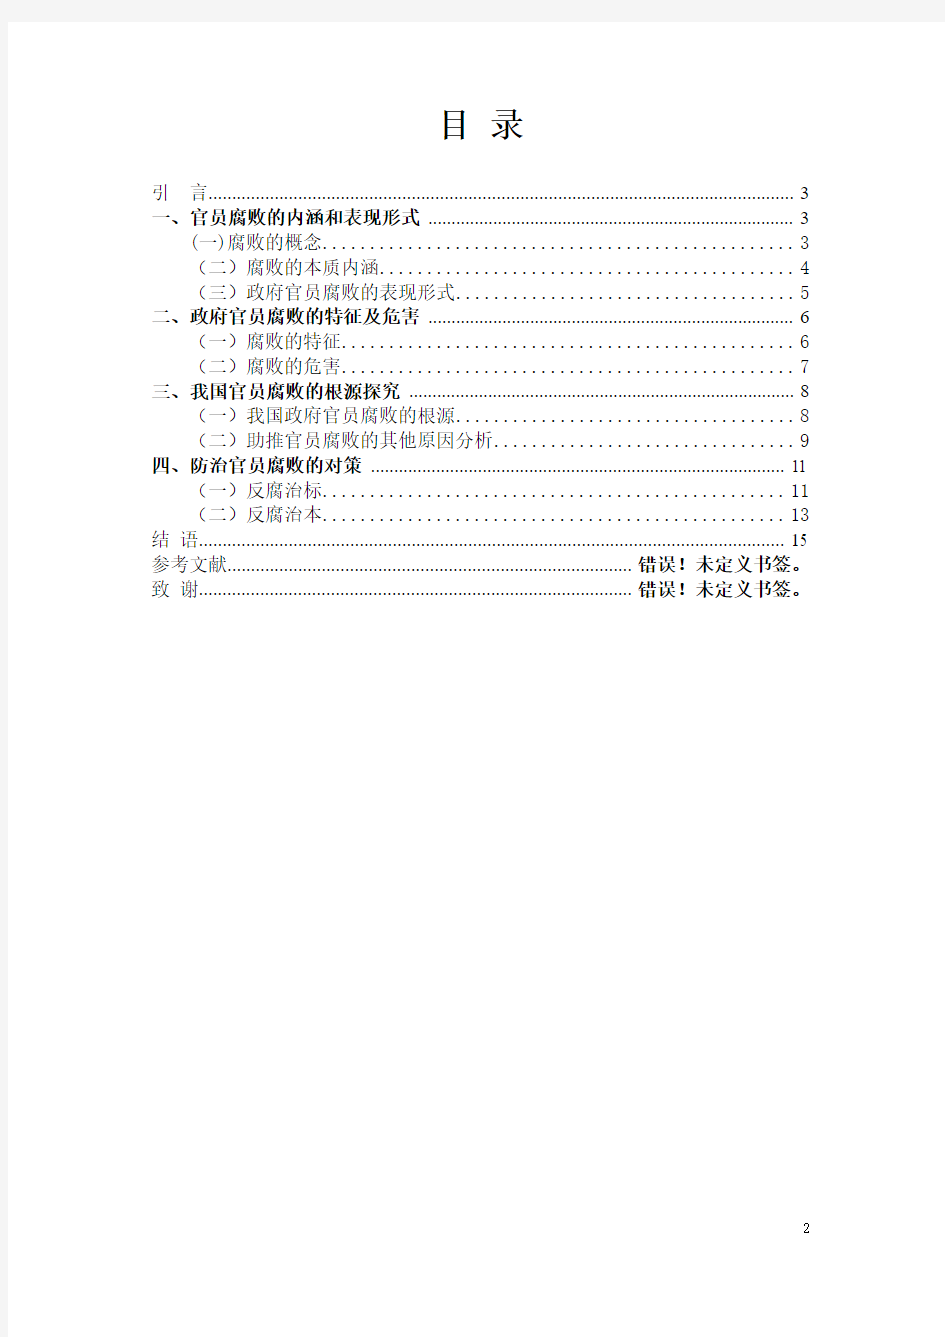 45-5-中国政府官员腐败问题研究及治理对策分析